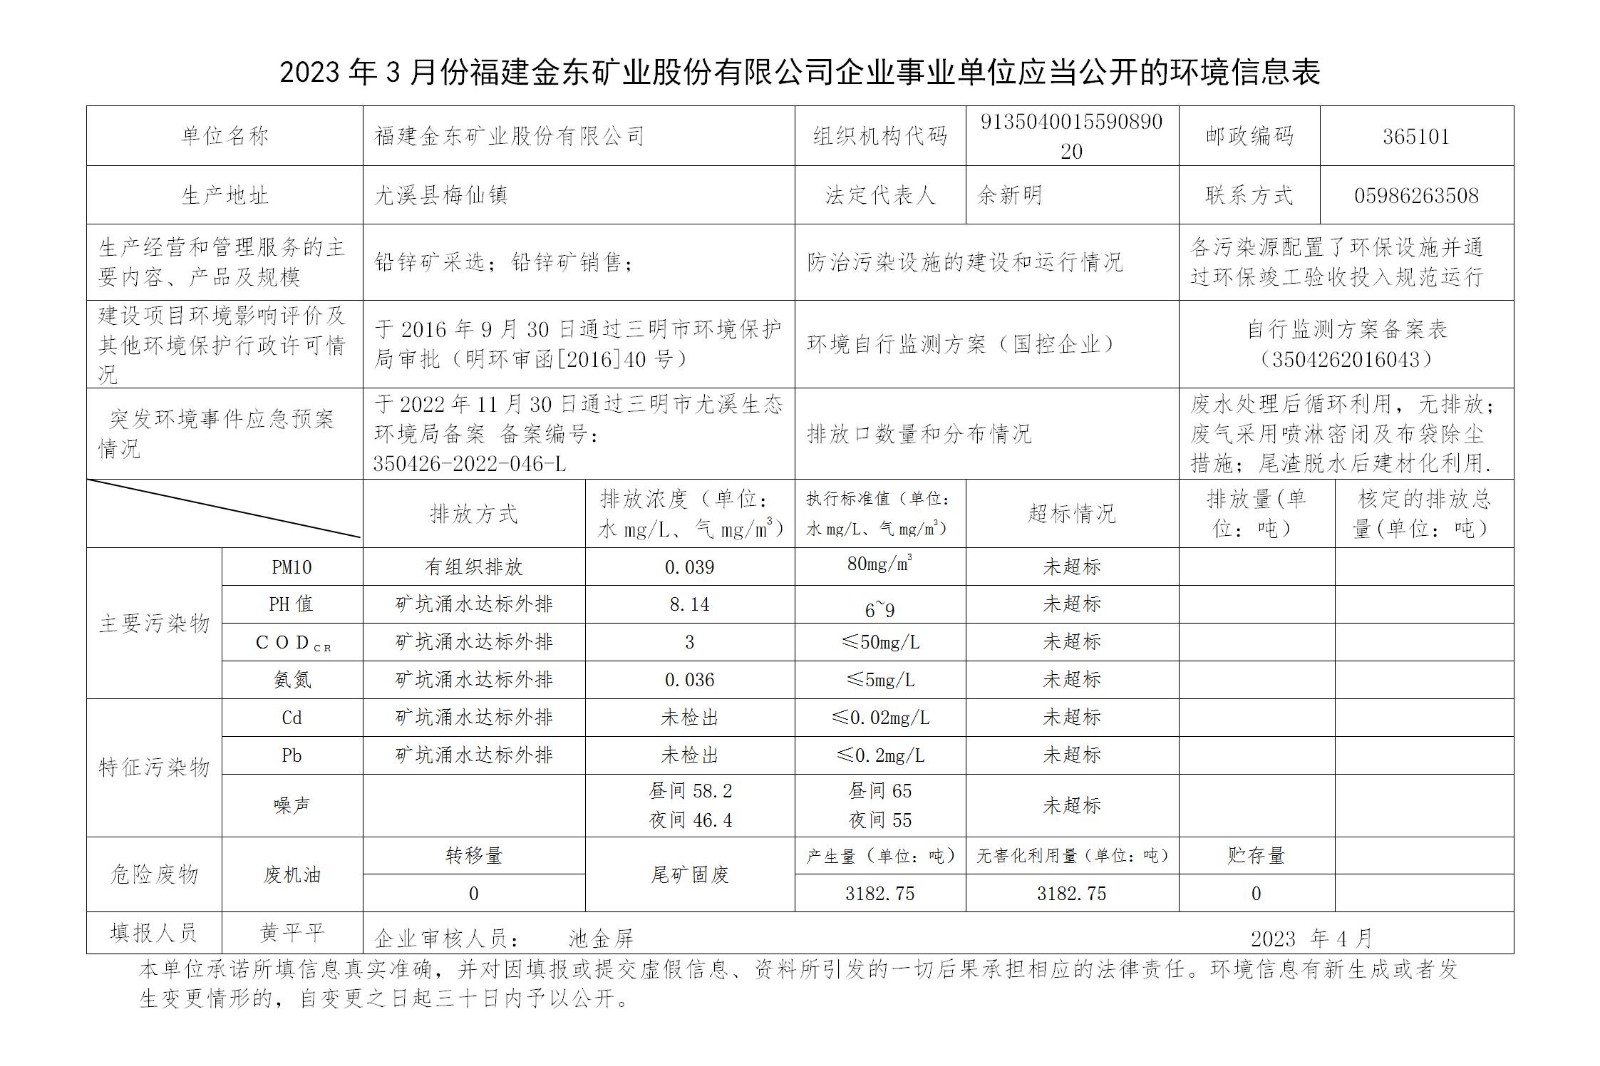 2023年3月份亚娱平台企业事业单位应当公开的环境信息表_01.jpg